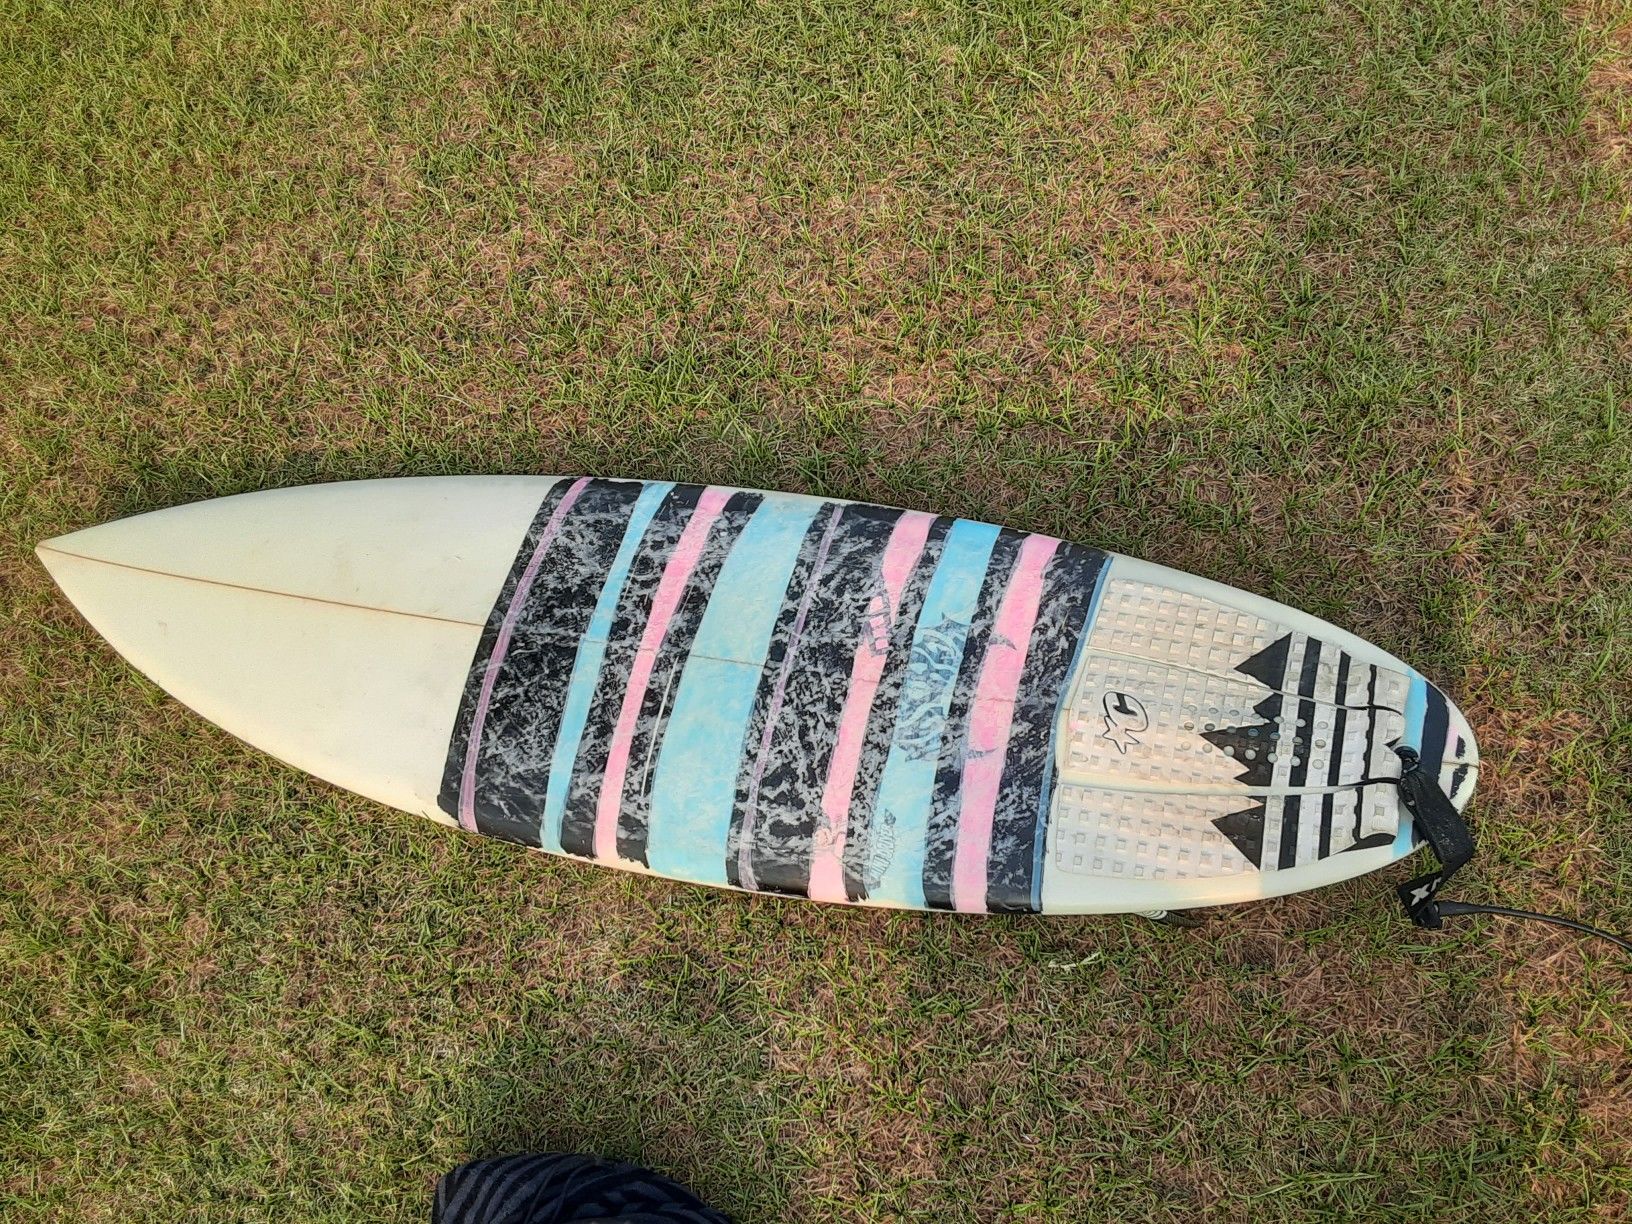 Lost - Mini Driver surfboard